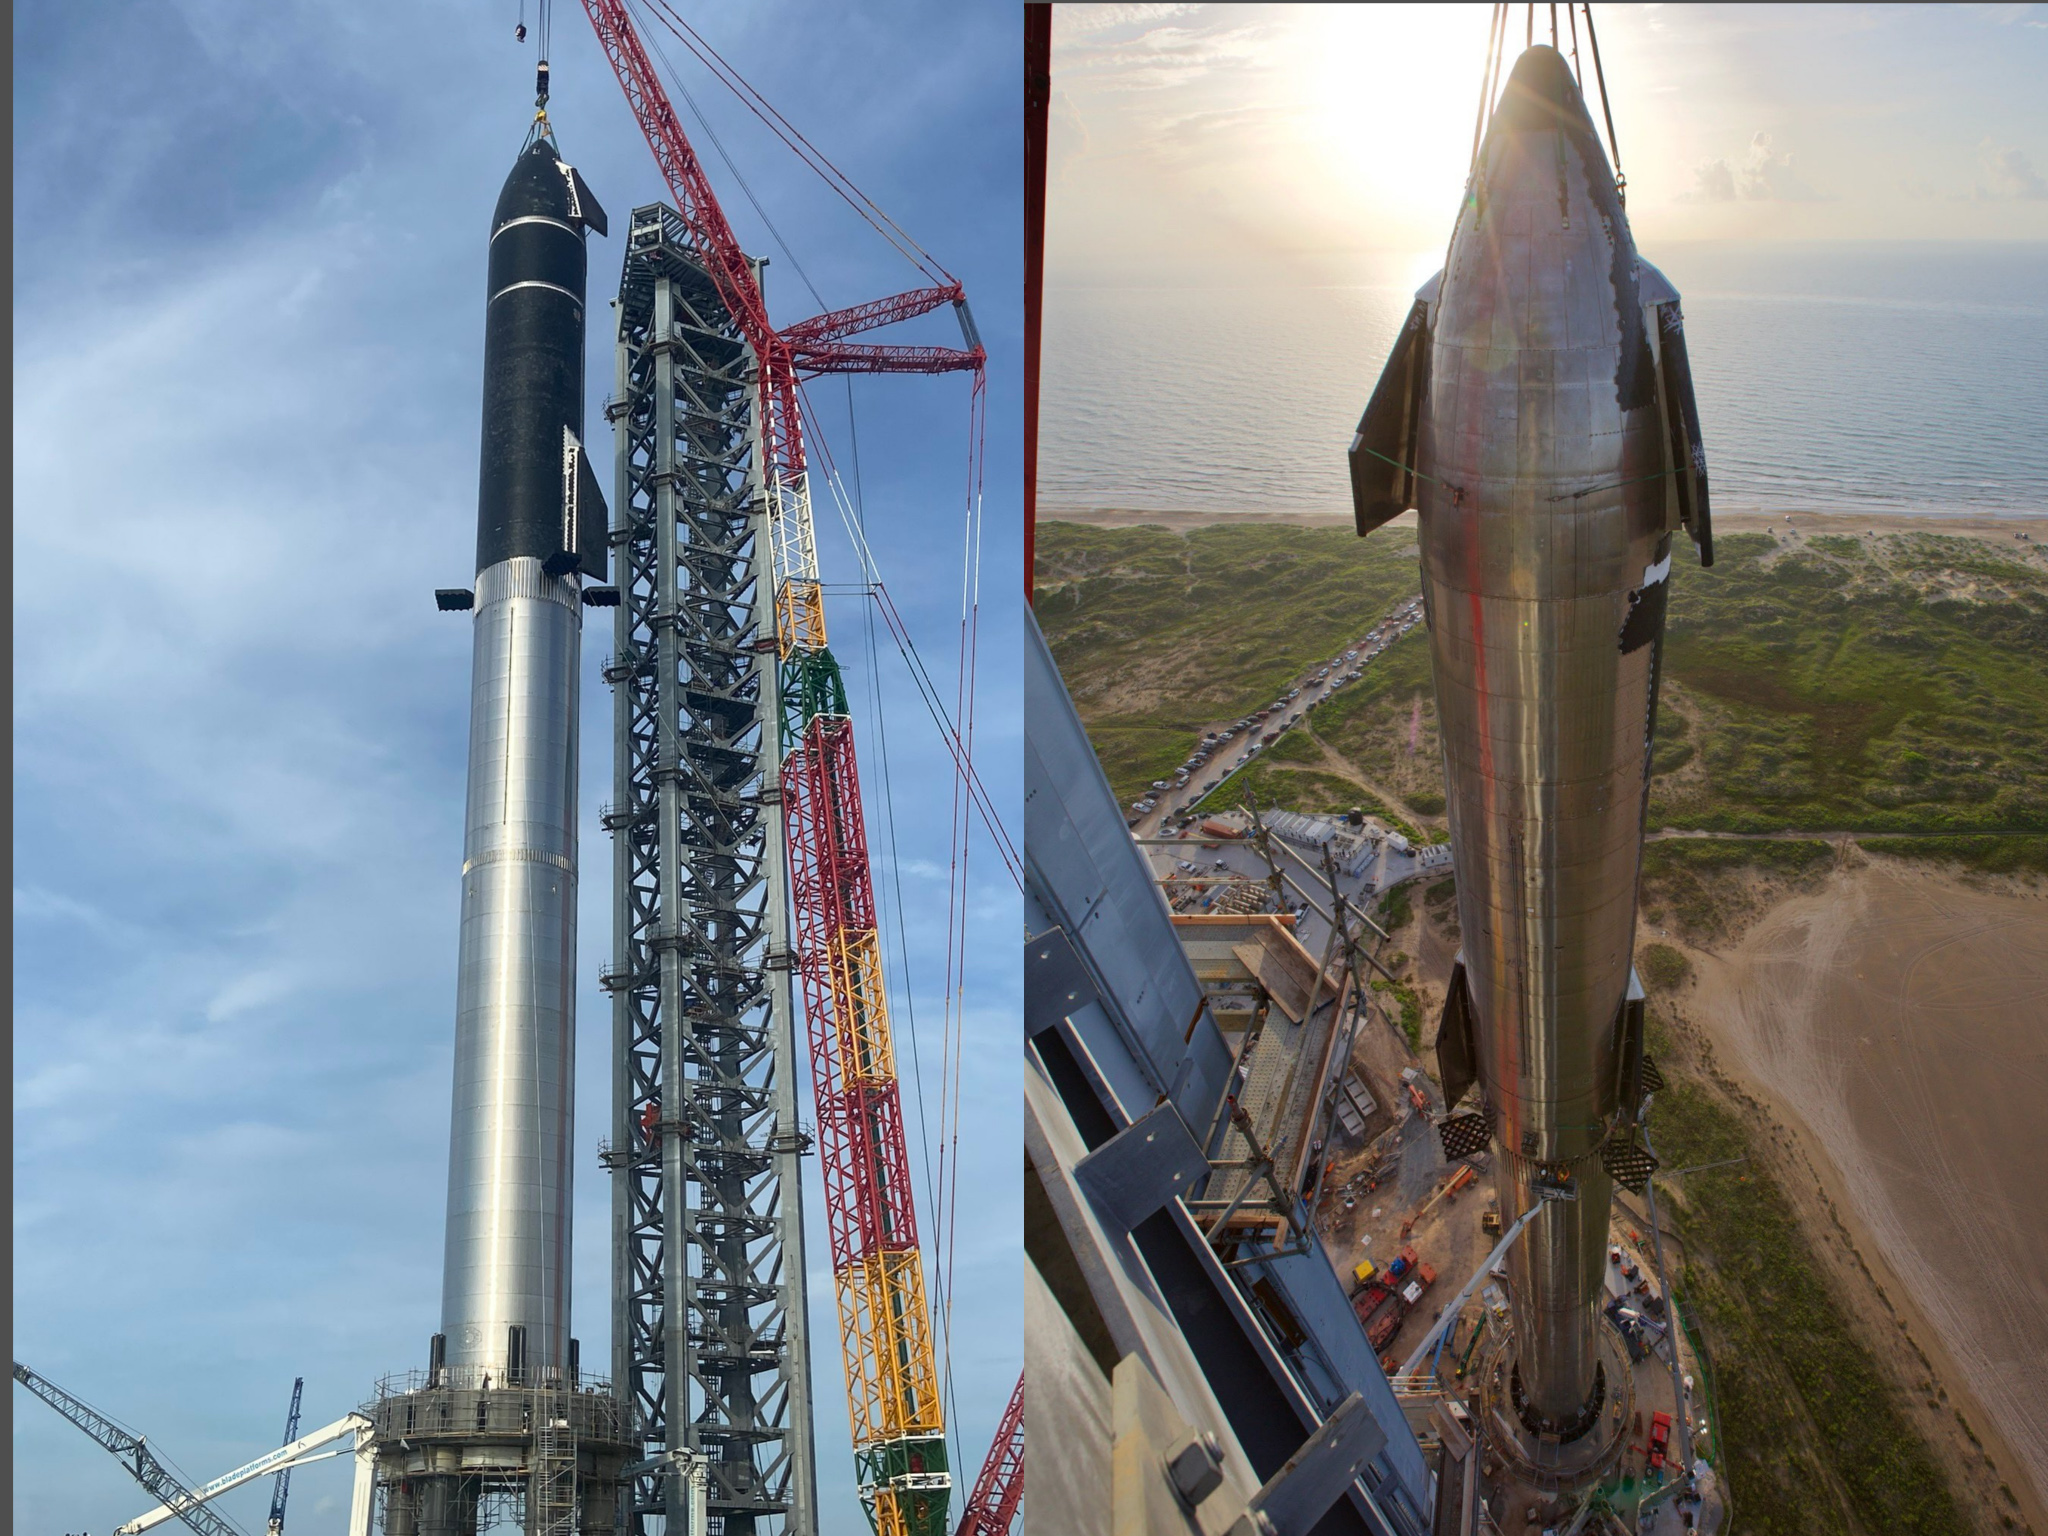 Elkészült a Starship, a világ legmagasabb rakétája